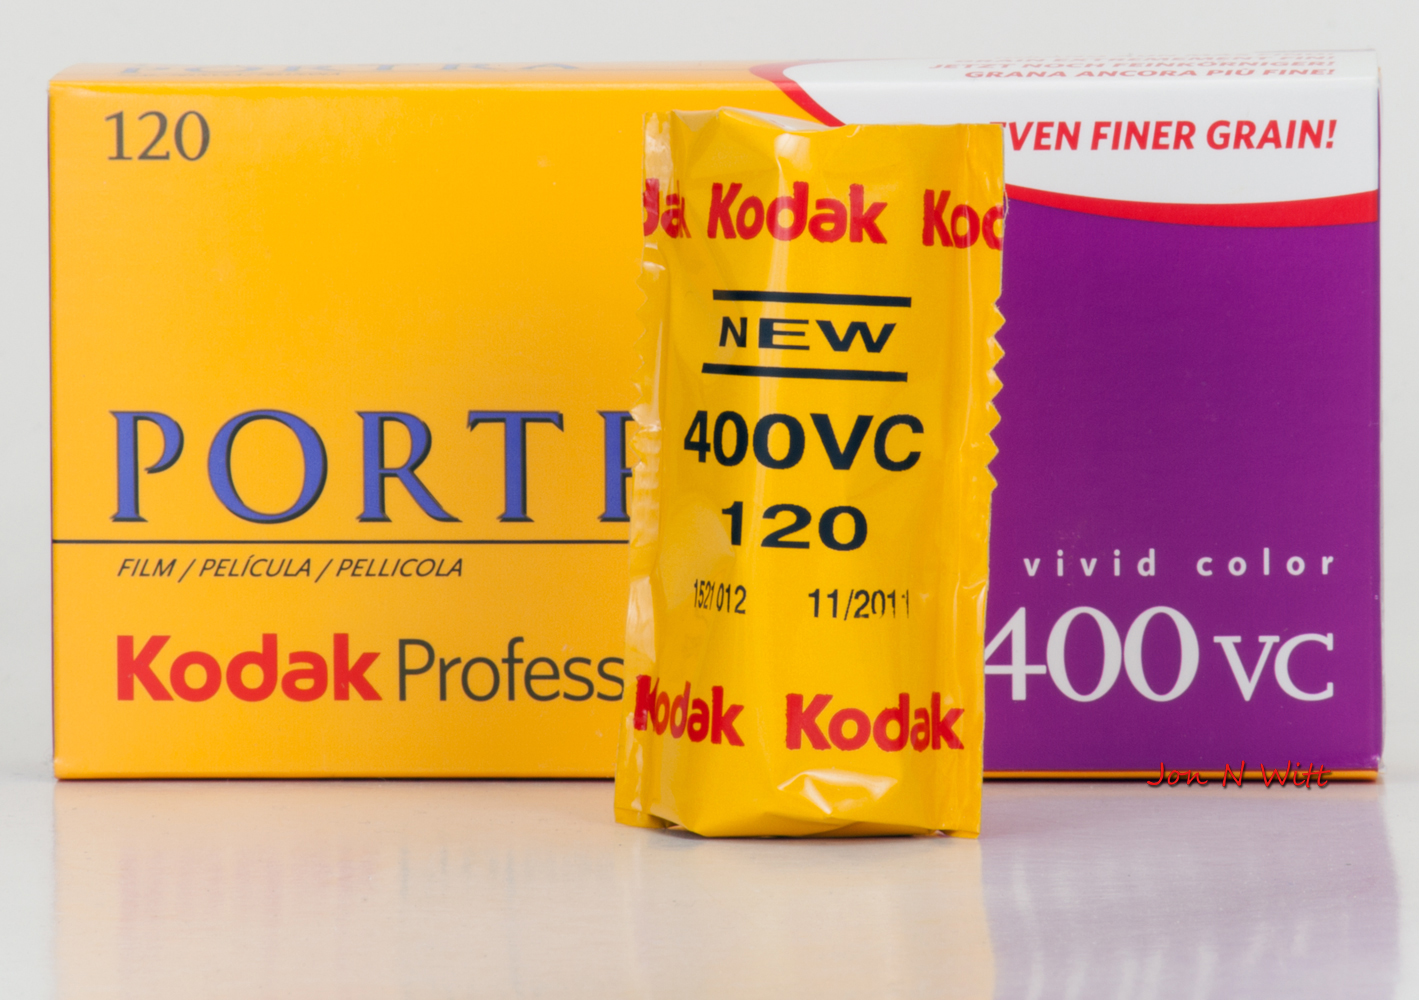 Kodak Portra 400VC 120 Film